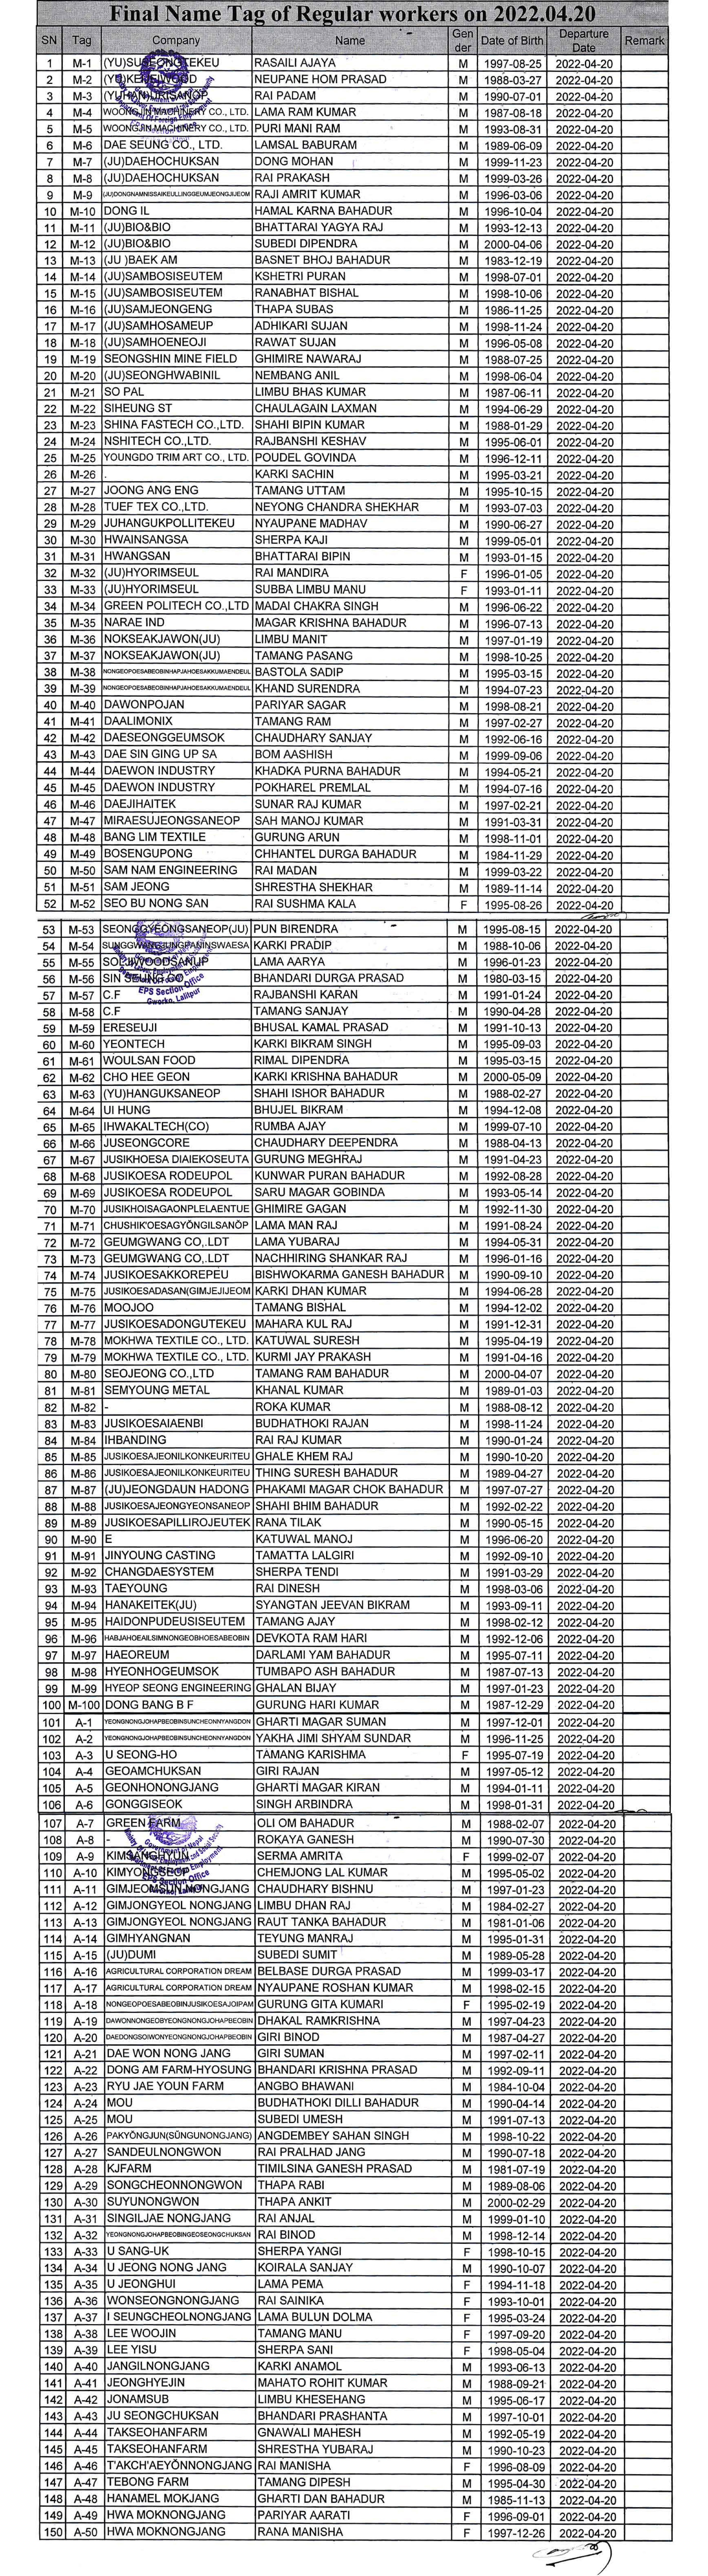 Final Name Lists of RW on 20 April 2022